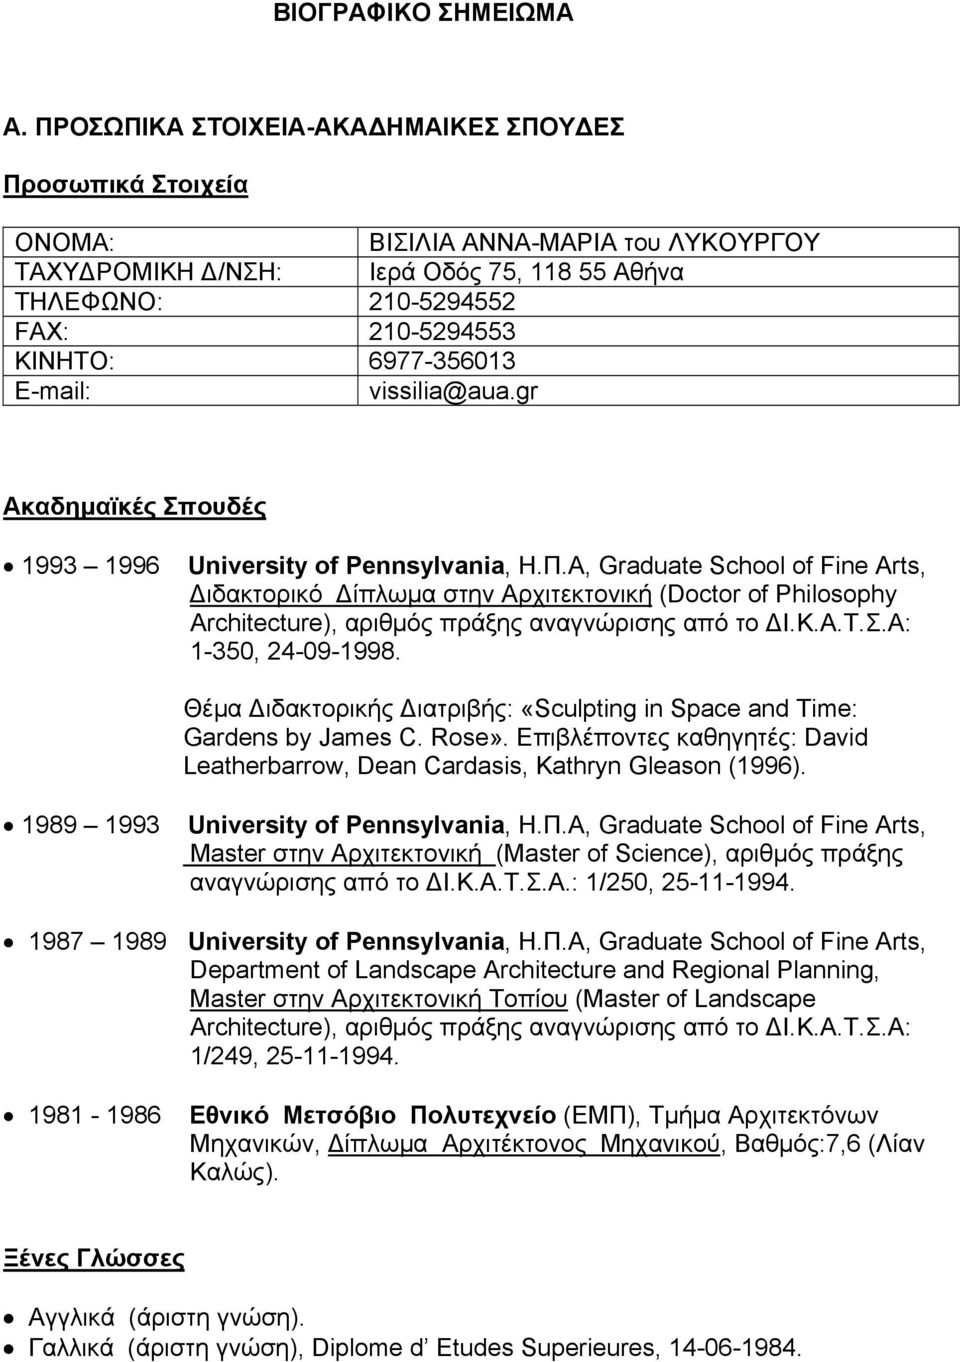 Α, Graduate School of Fine Arts, Διδακτορικό Δίπλωμα στην Αρχιτεκτονική (Doctor of Philosophy Architecture), αριθμός πράξης αναγνώρισης από το ΔΙ.Κ.Α.Τ.Σ.Α: 1-350, 24-09-1998.